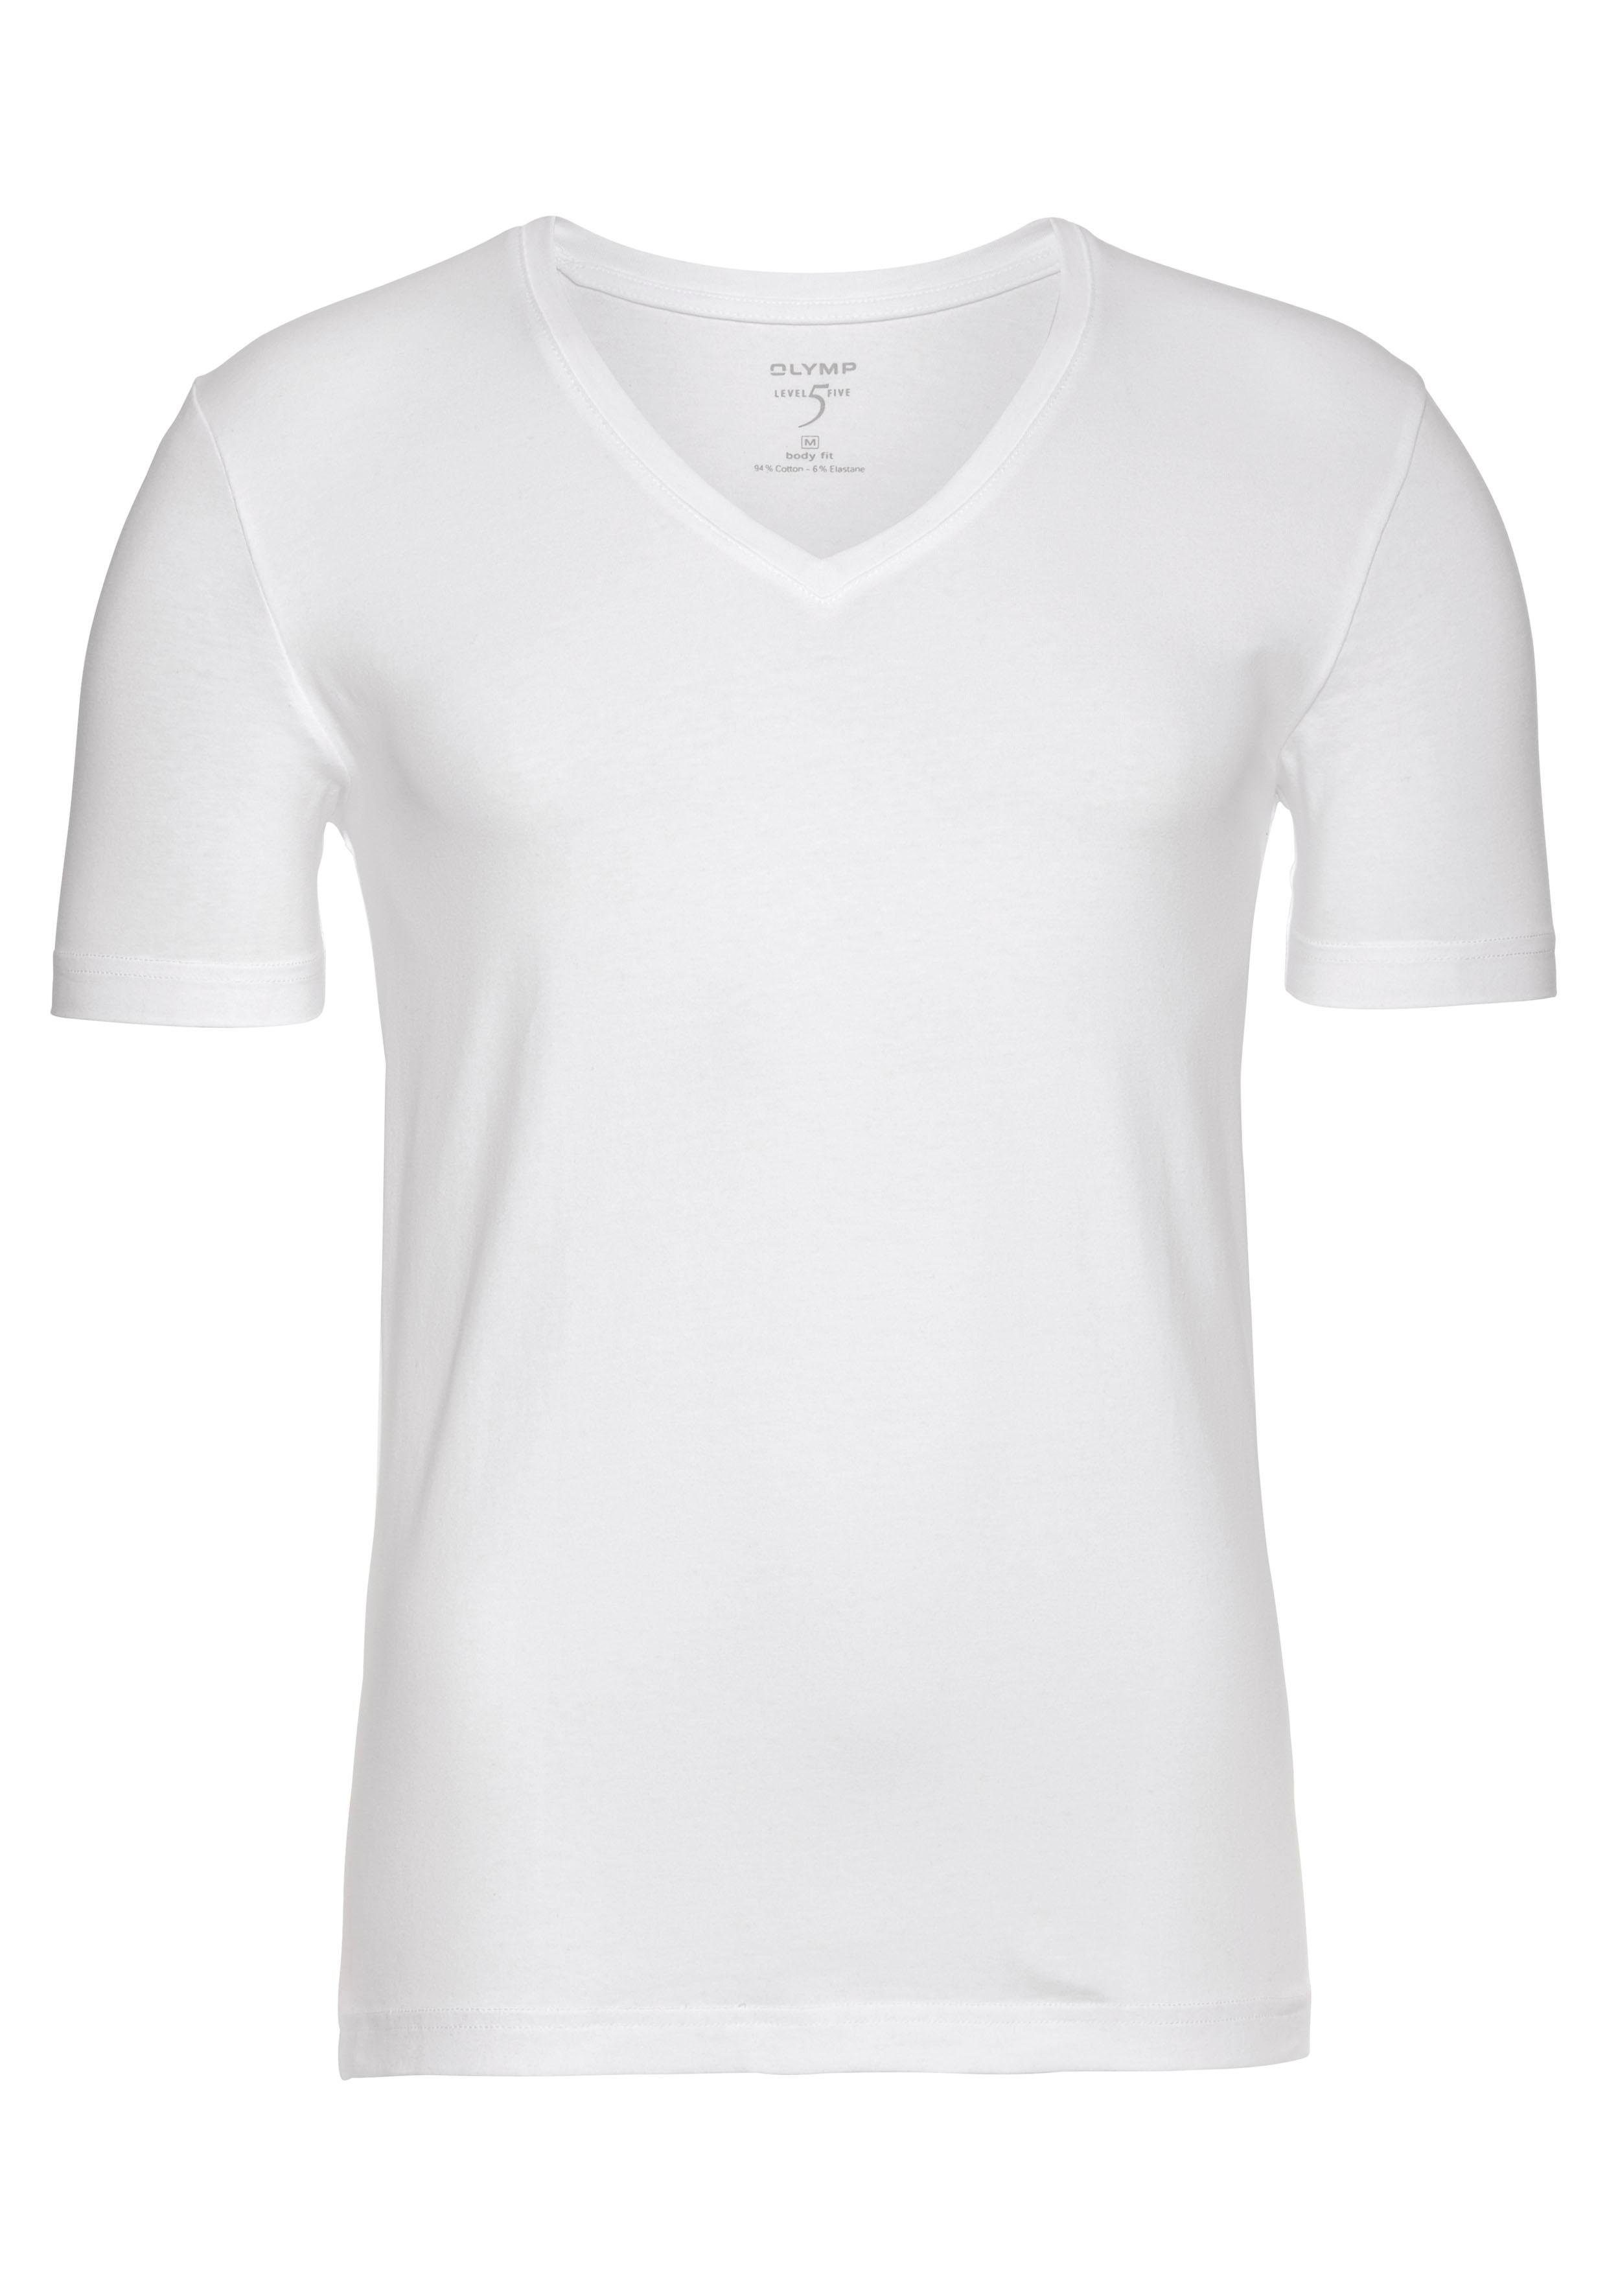 OLYMP T-Shirt weiß Five fit Level Unterziehen zum Ideal body V-Ausschnitt